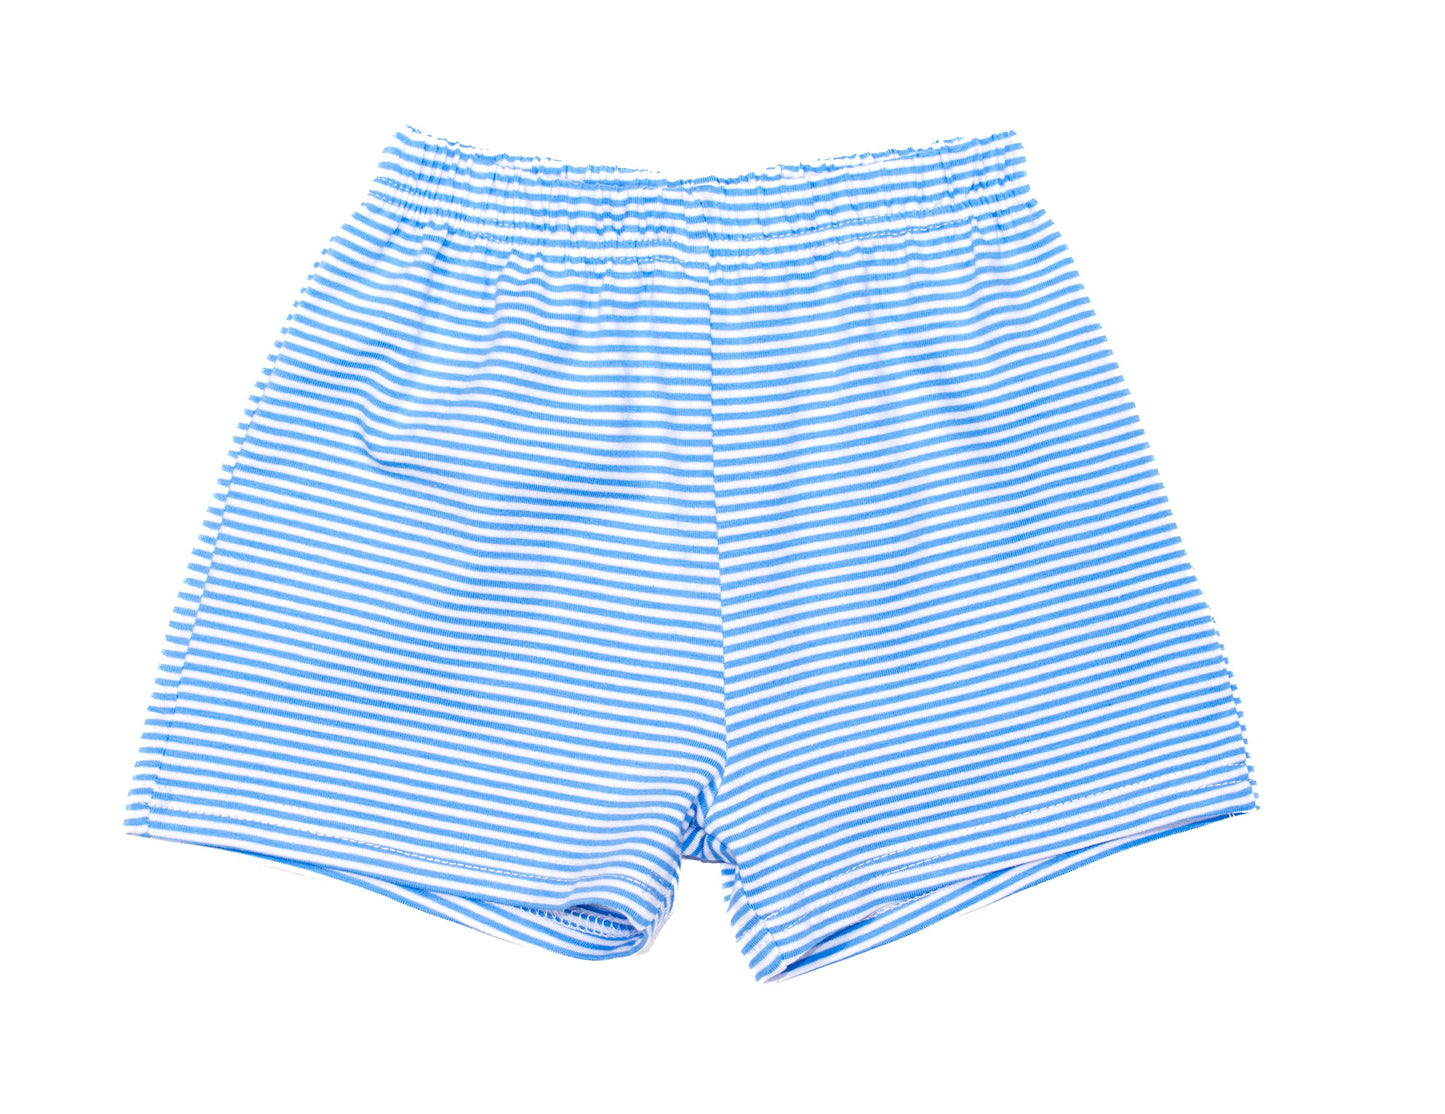 Cobalt stripes shorts - PREORDER*